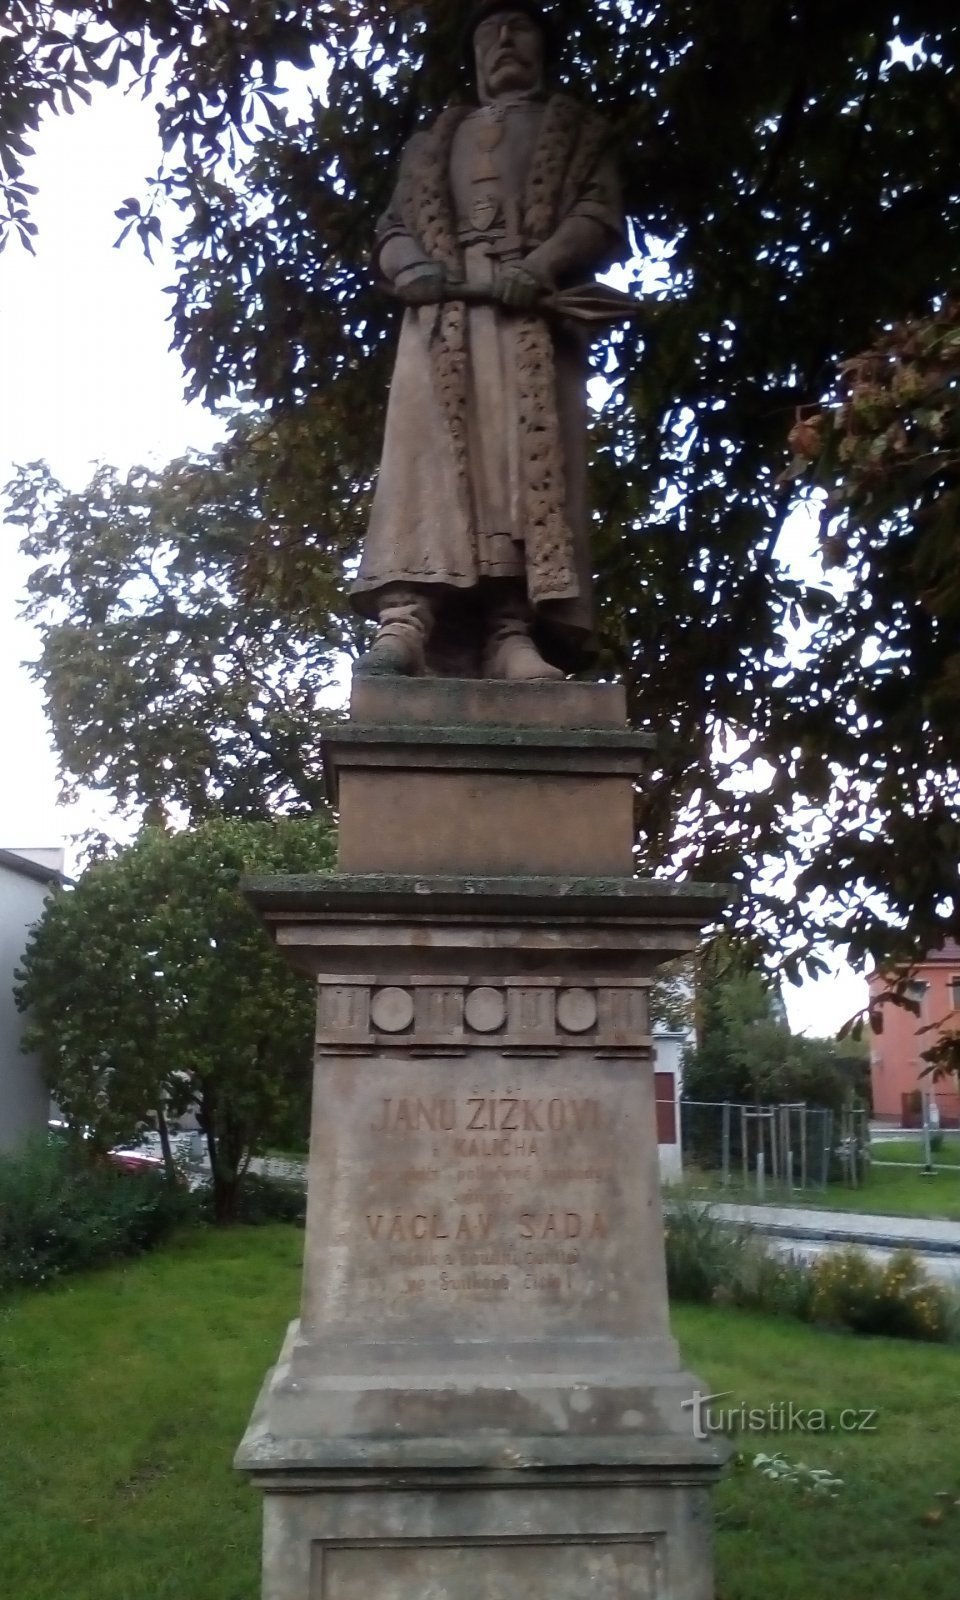 Monument to Jan Žižek in Svítkov